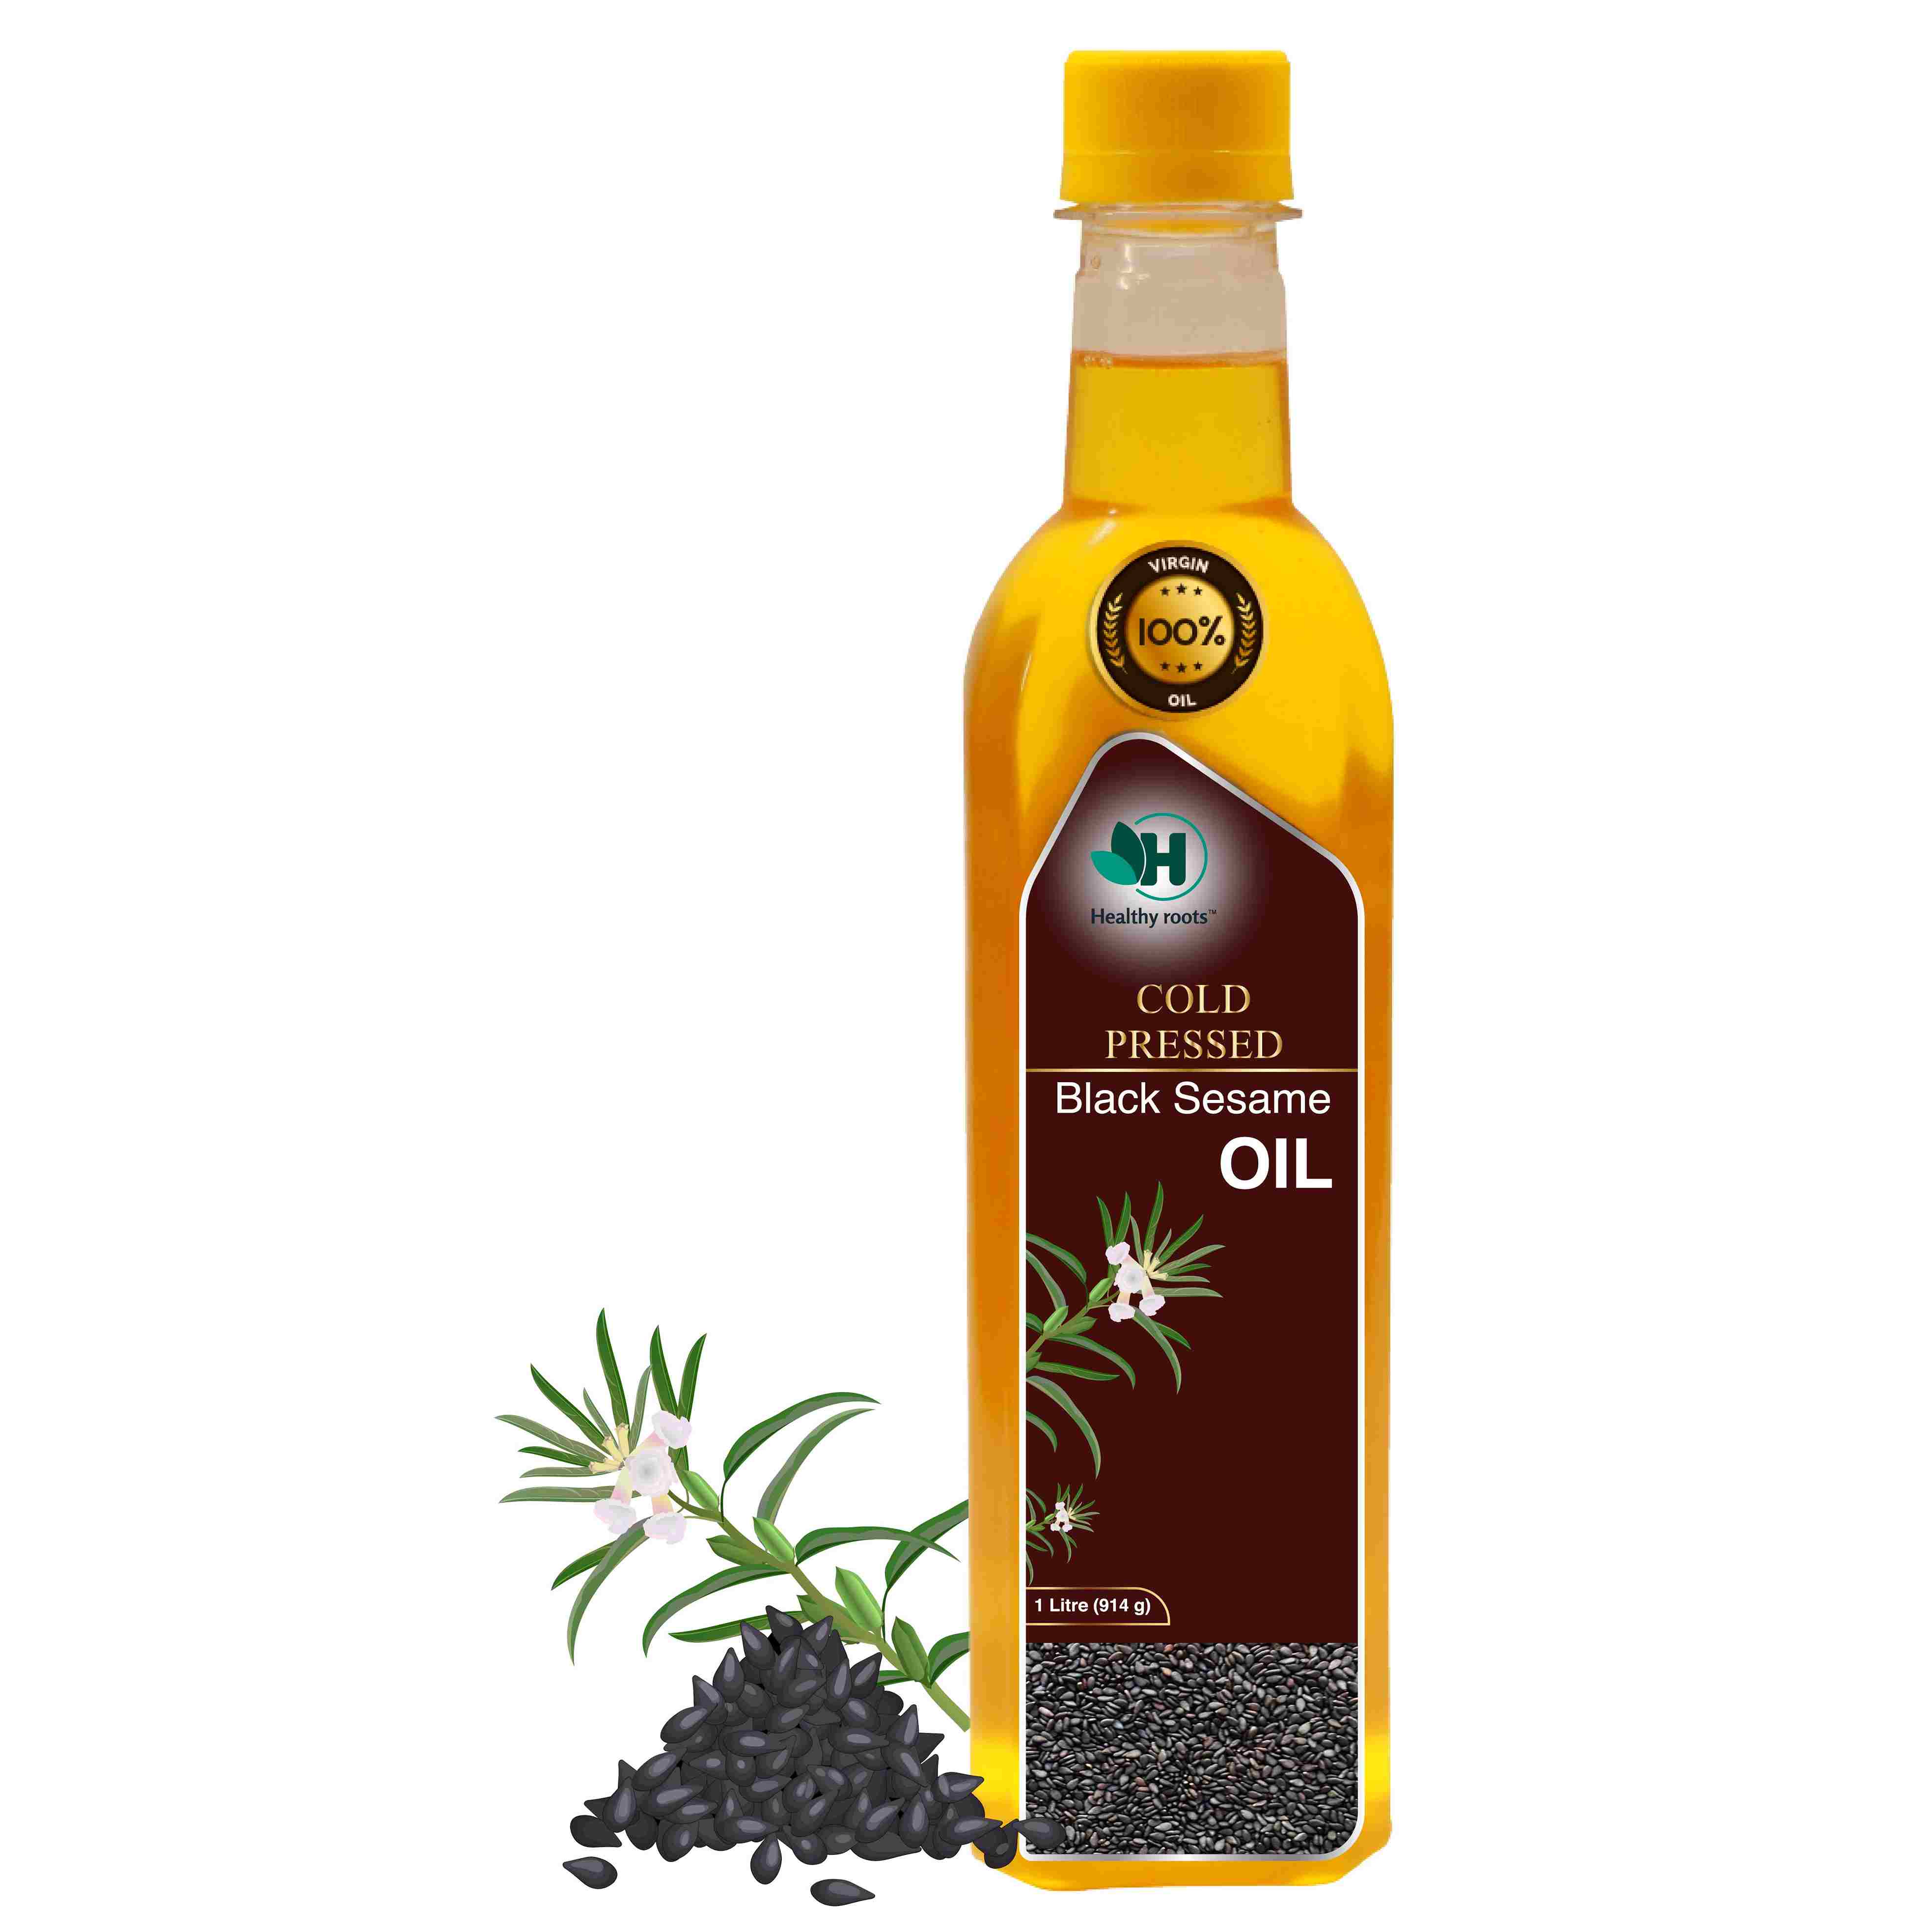 Black Sesame Oil, Cold Pressed